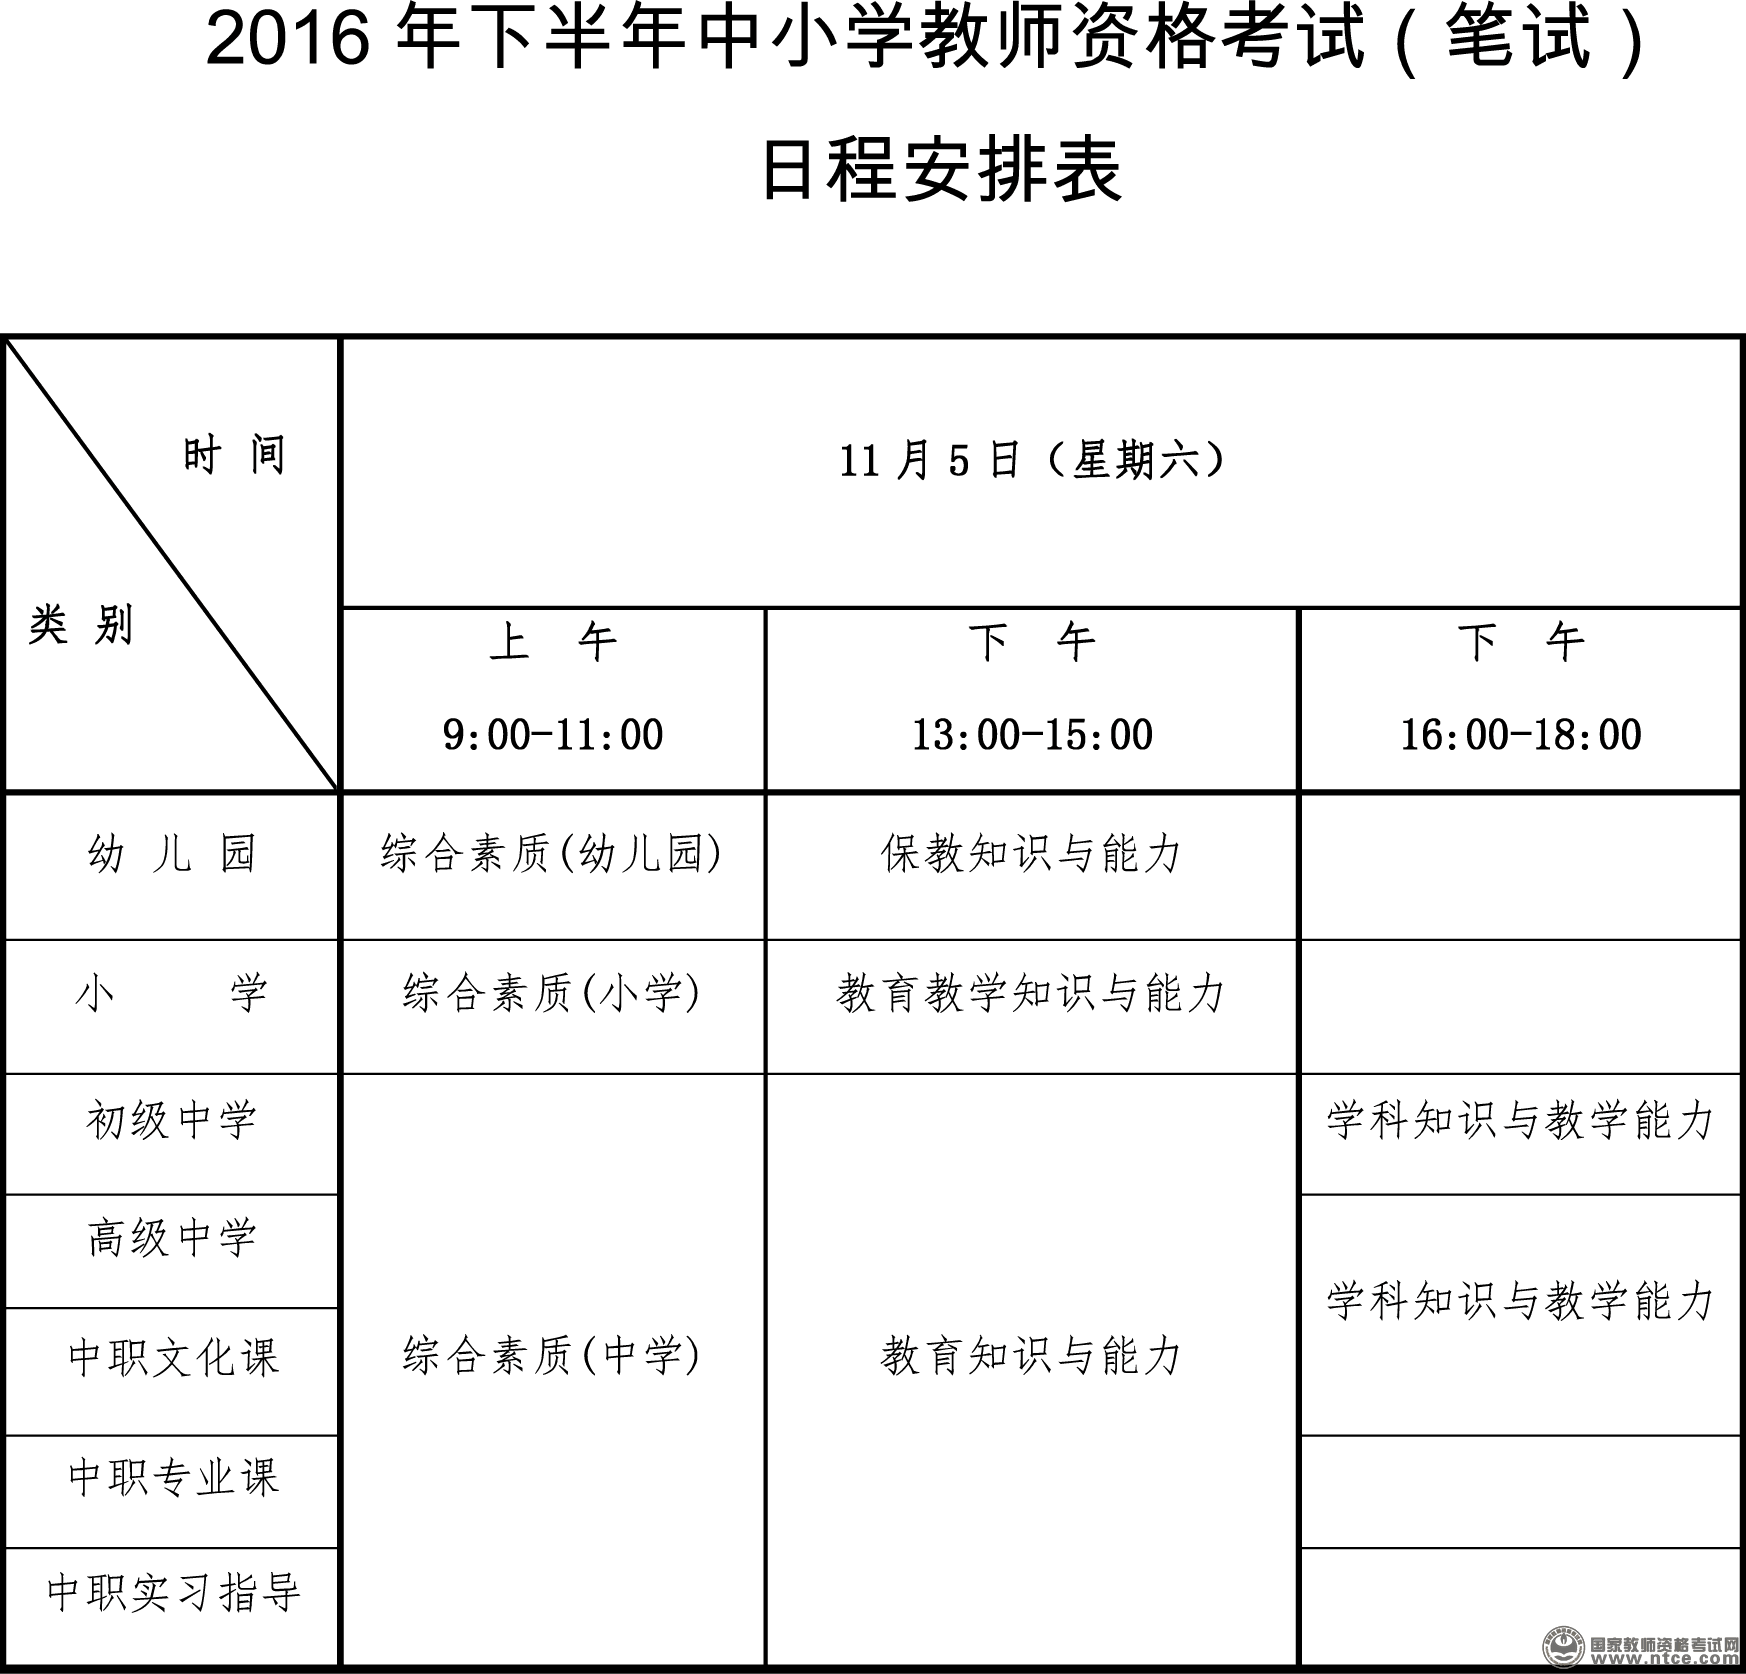 重庆2016下半年教师资格证考试日程出炉